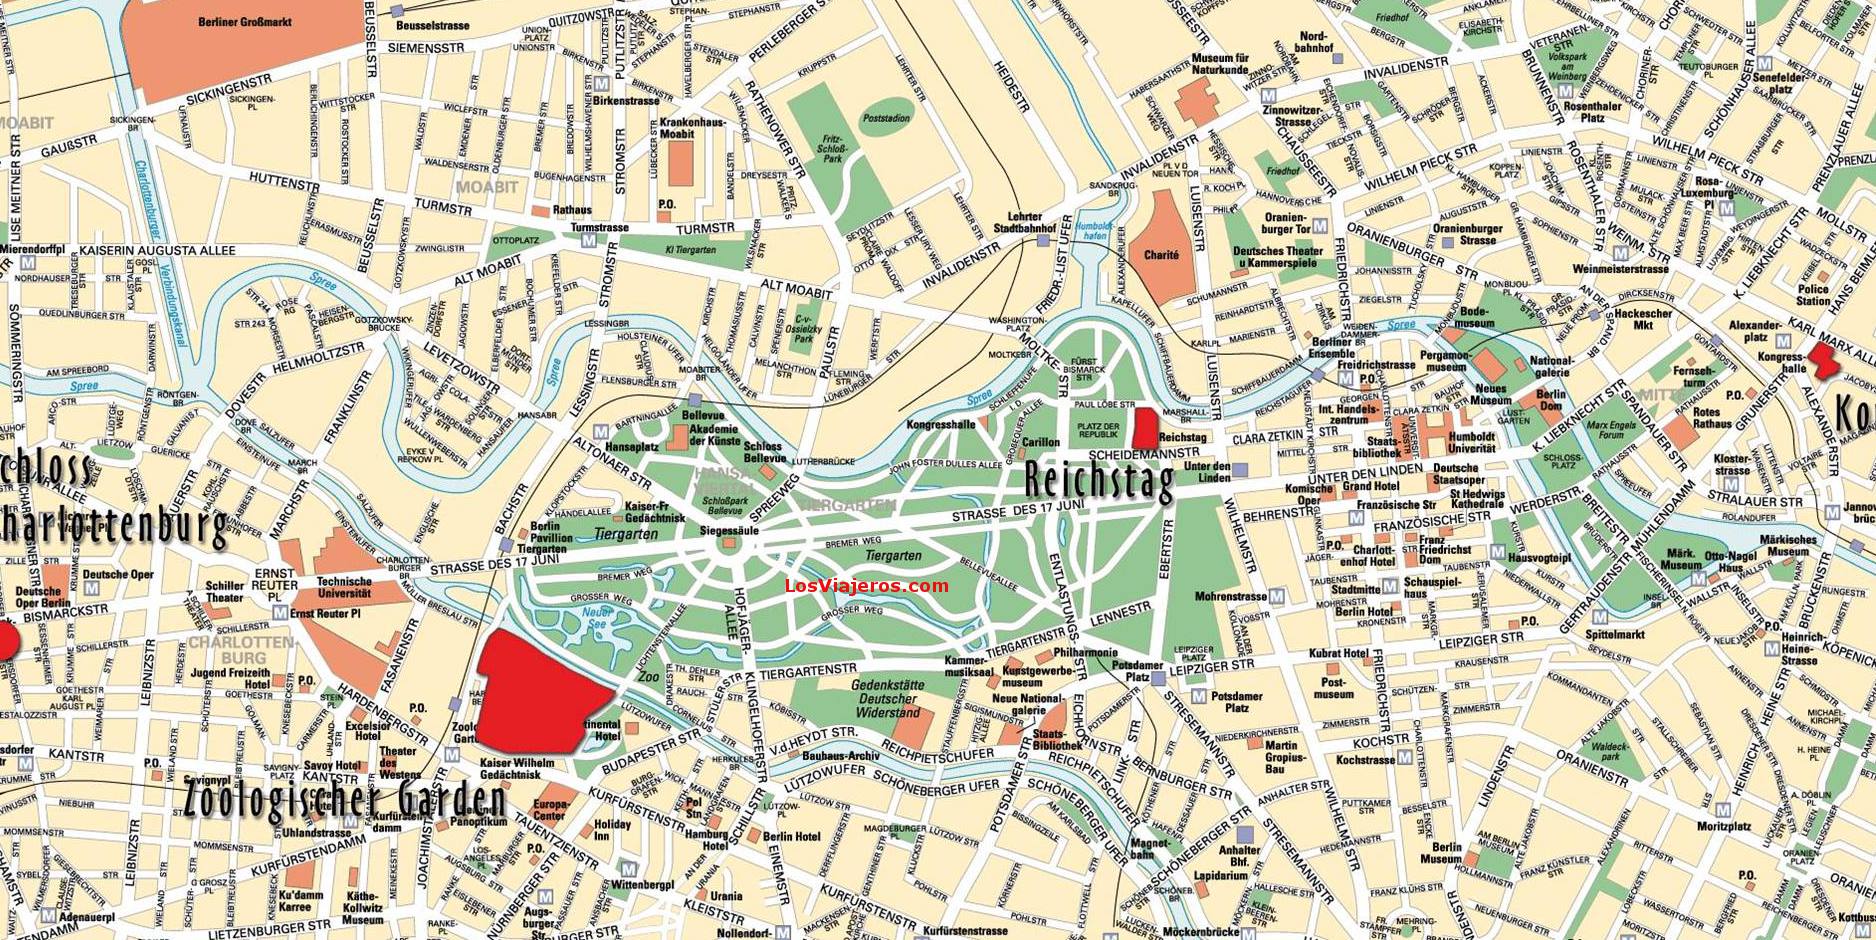 Mapa turistico de Berlin, Berlín: Consejos, opiniones, visitas - Alemania